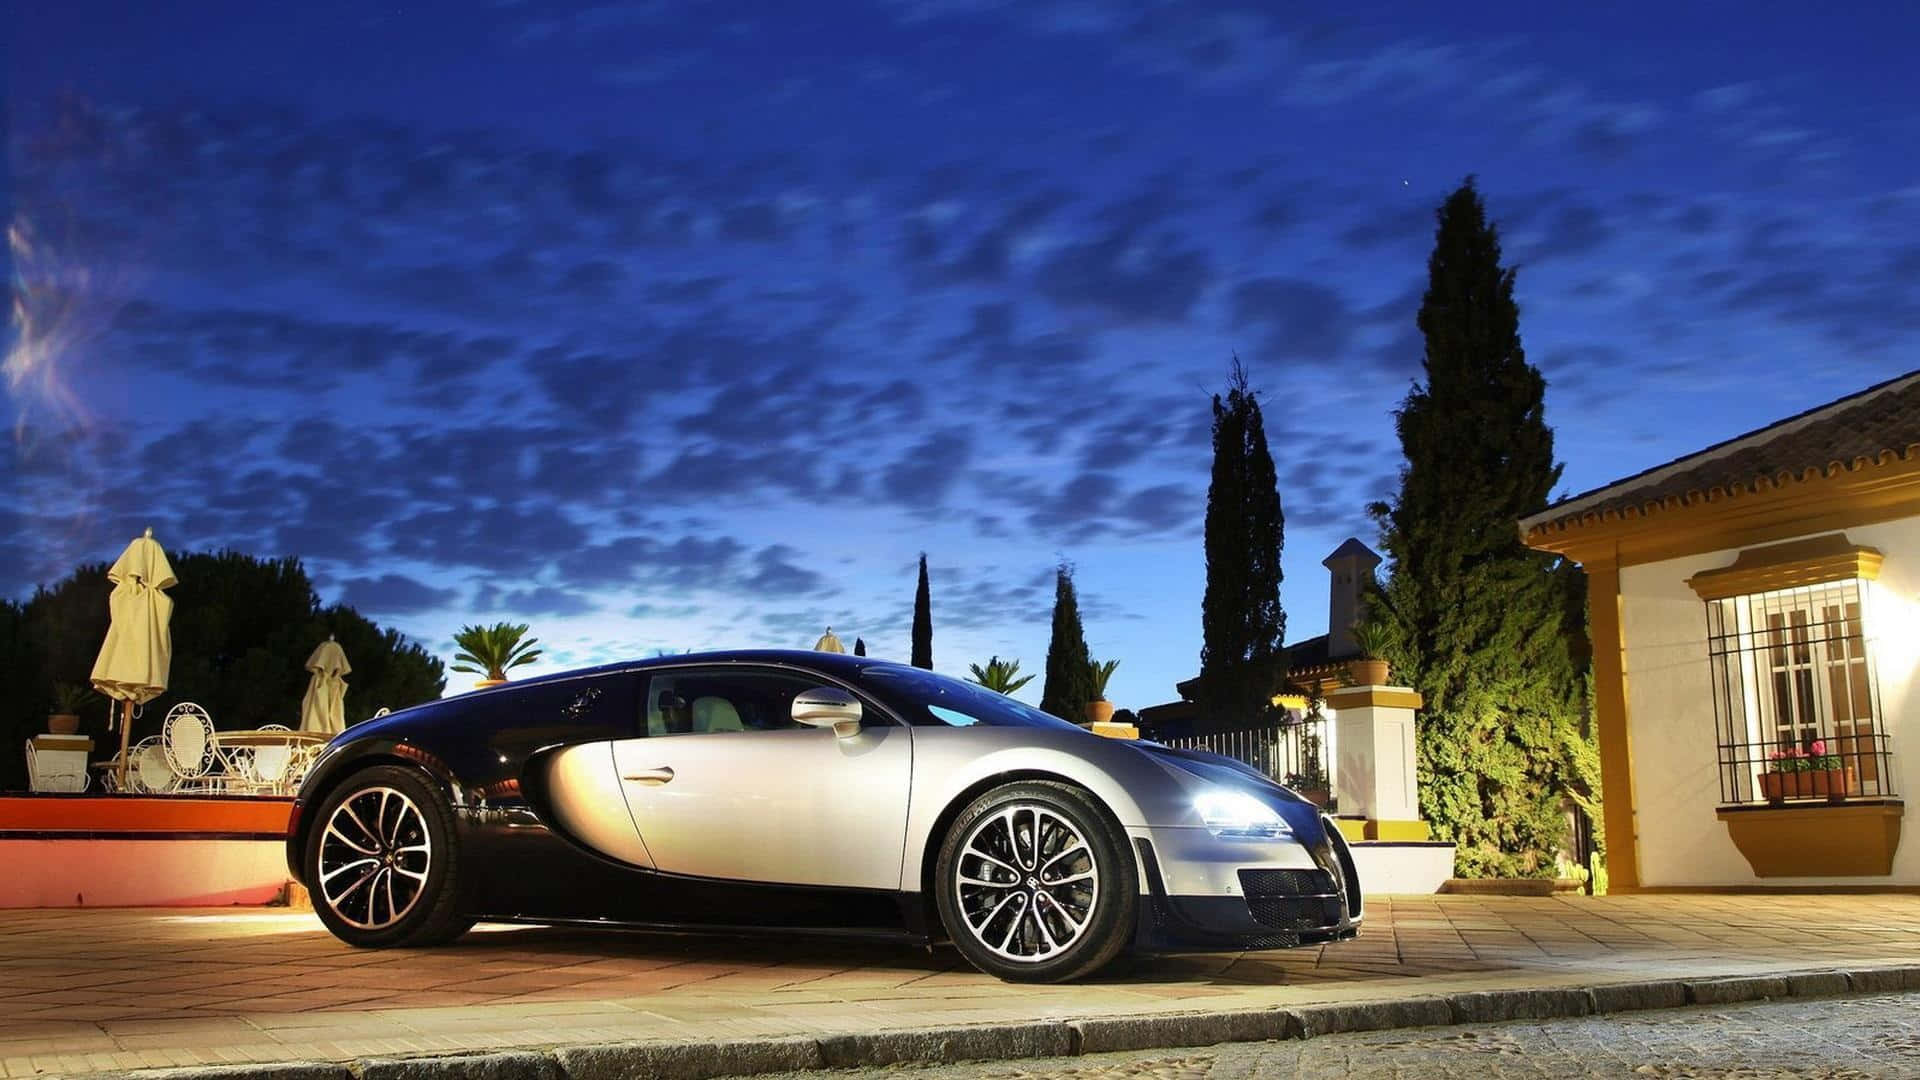 Geborenfür Geschwindigkeit – Der Bugatti Veyron Supersportwagen Wallpaper